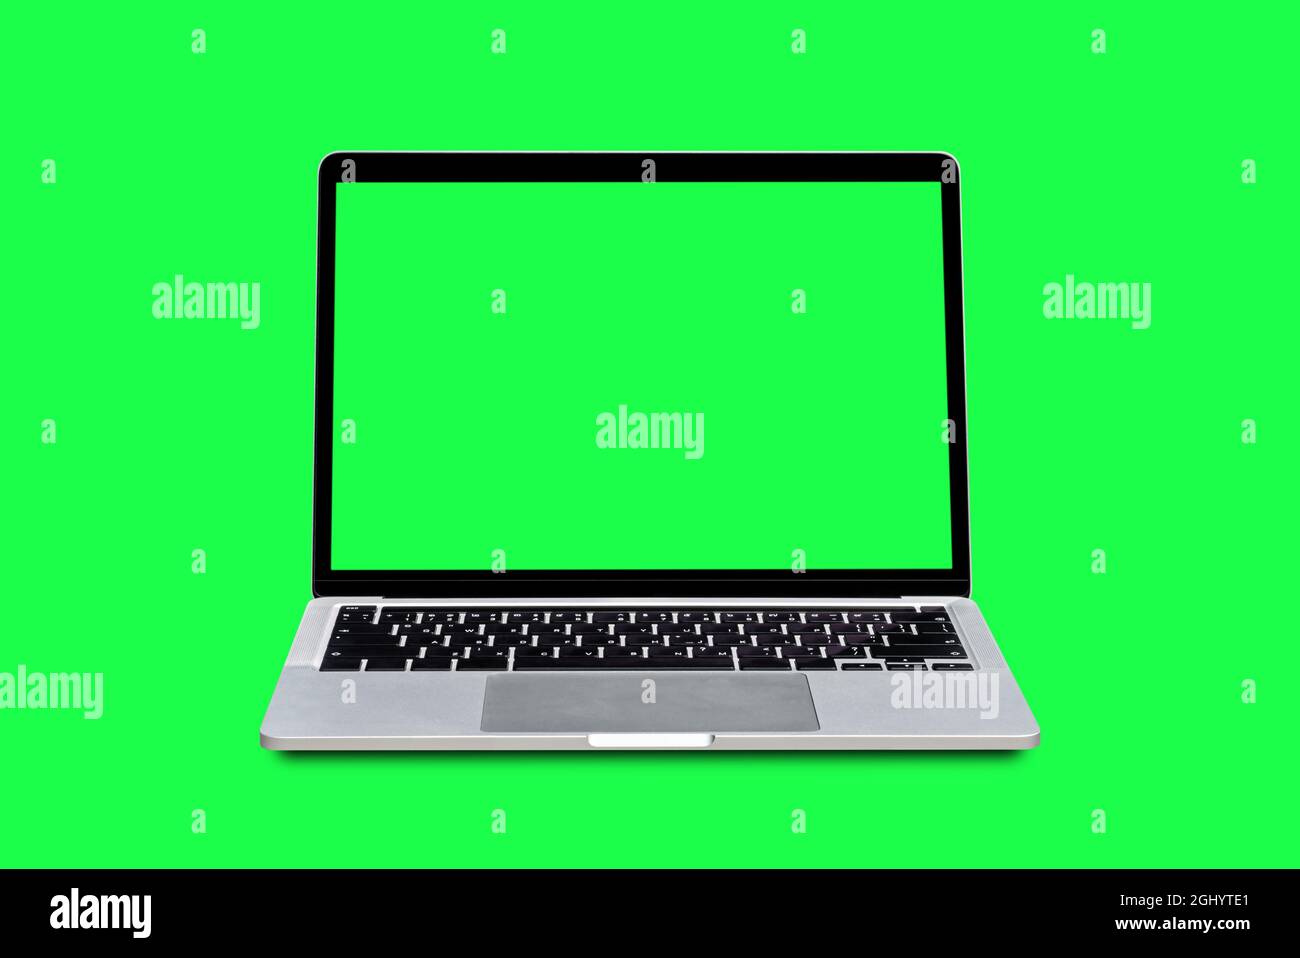 Bạn đang tìm kiếm một chiếc máy tính xách tay với màn hình xanh lá cây trông hoàn hảo cách ly trên nền xanh lá cây đầy thú vị? Hãy tham khảo bức hình này! Với hình ảnh đầy sức hút này, máy tính xách tay của bạn sẽ trở nên nổi bật hơn bao giờ hết.